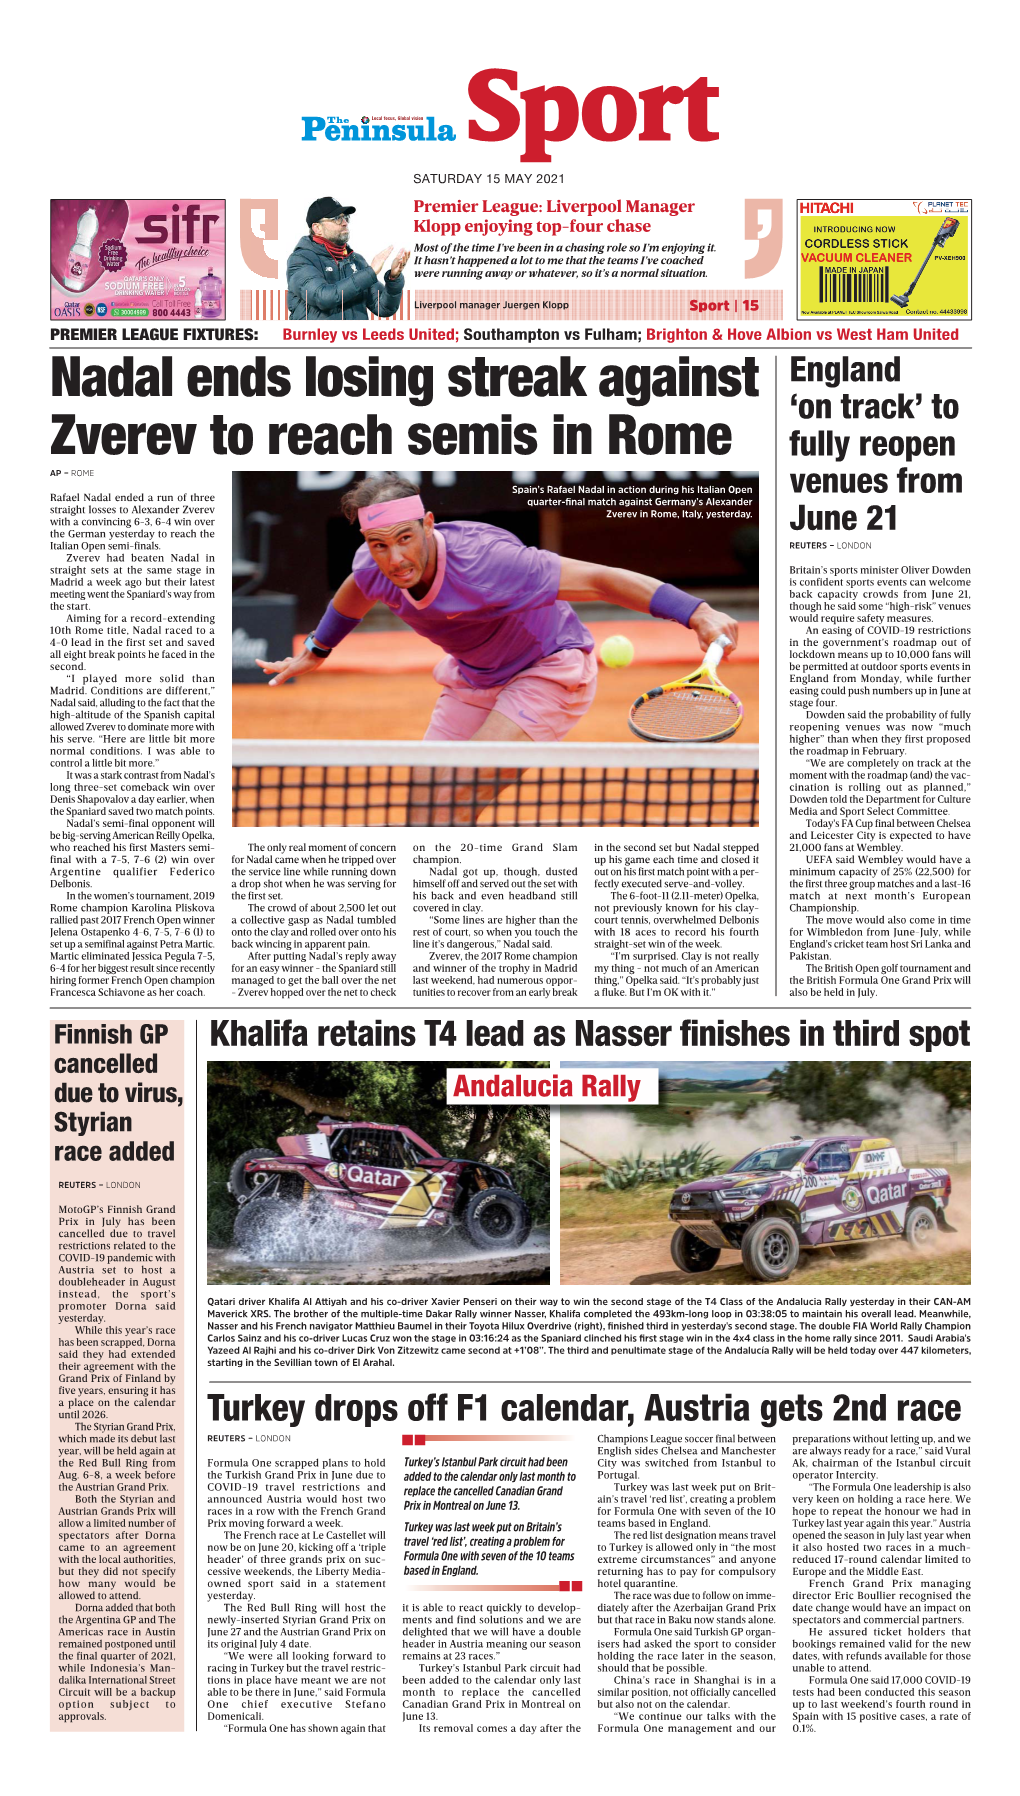 Nadal Ends Losing Streak Against Zverev to Reach Semis in Rome